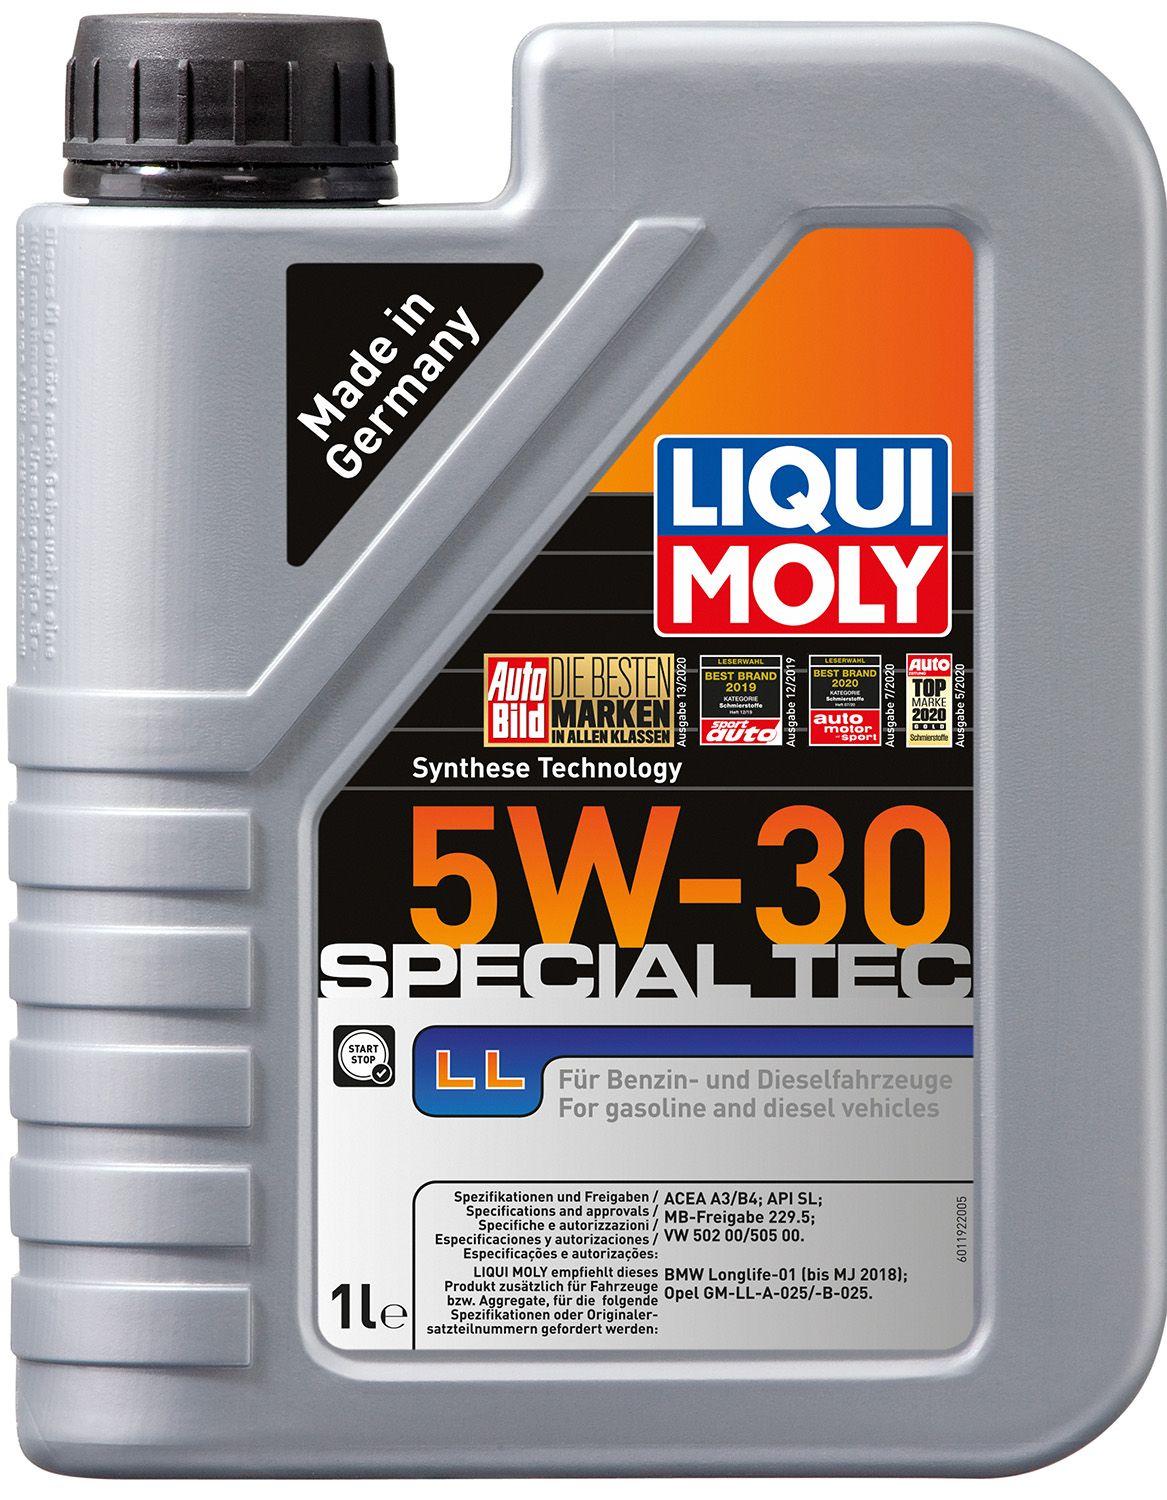 Моторное масло Liqui Moly Special Tec LL / OPEL 5W-30, 1 литр (8054)